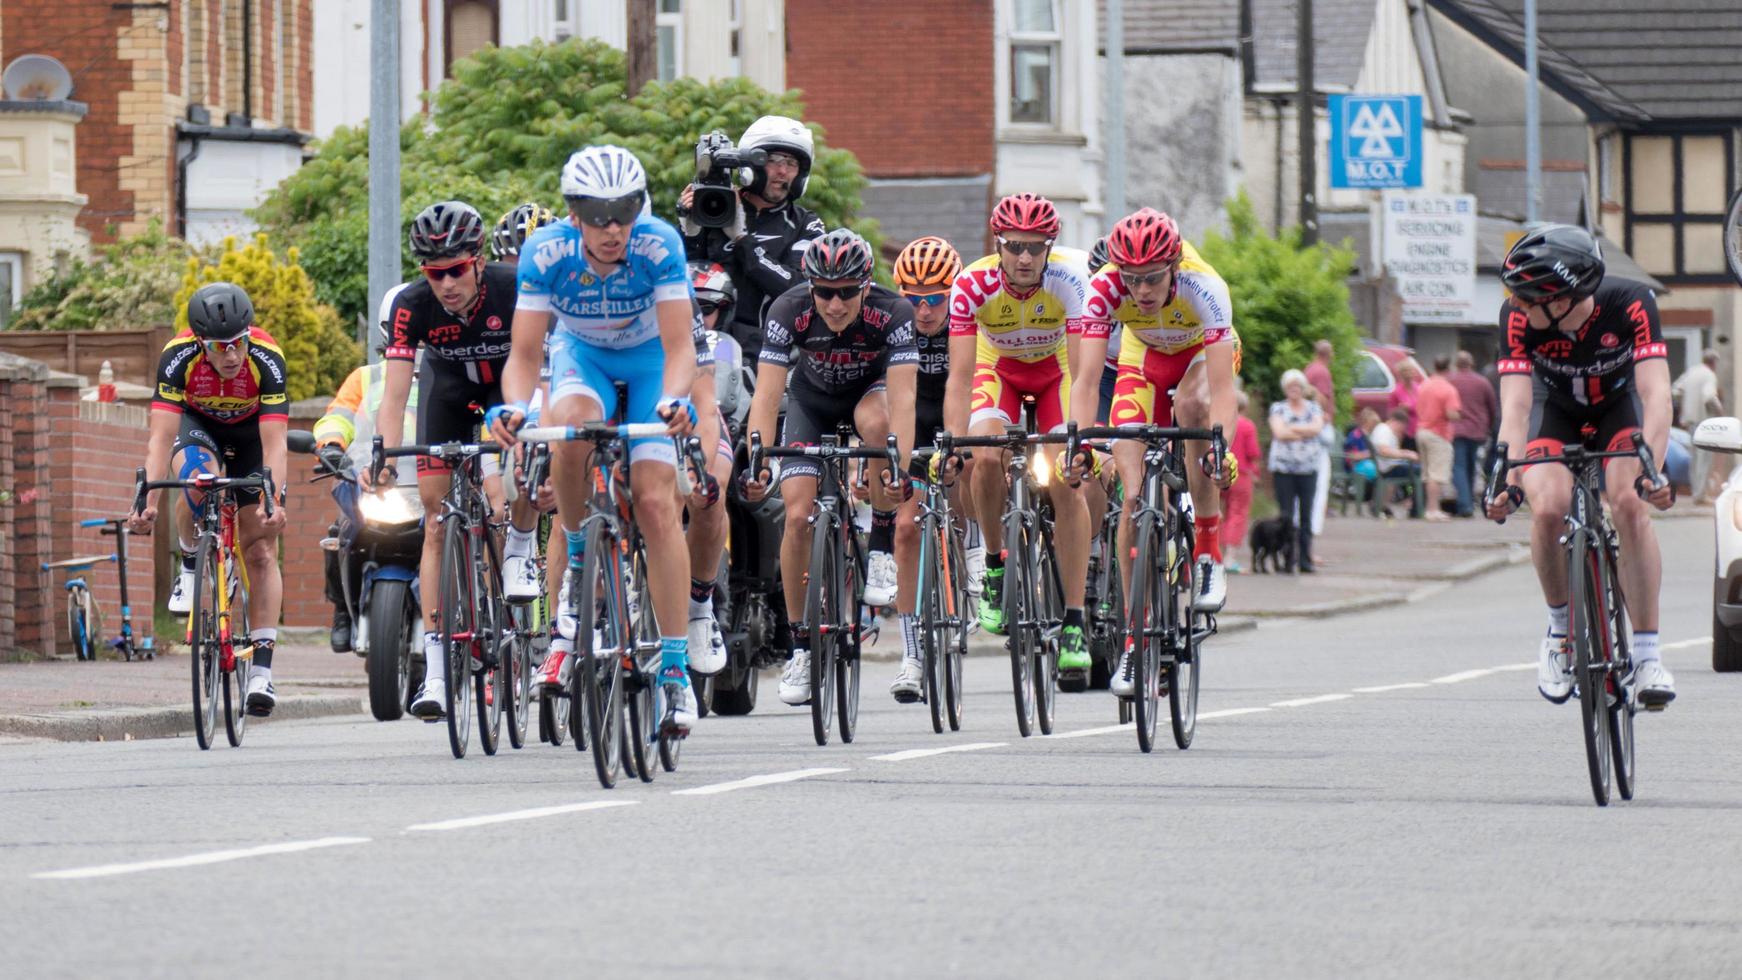 Cardiff, Galles, Regno Unito, 2015. i ciclisti che partecipano al velothon ciclismo evento foto